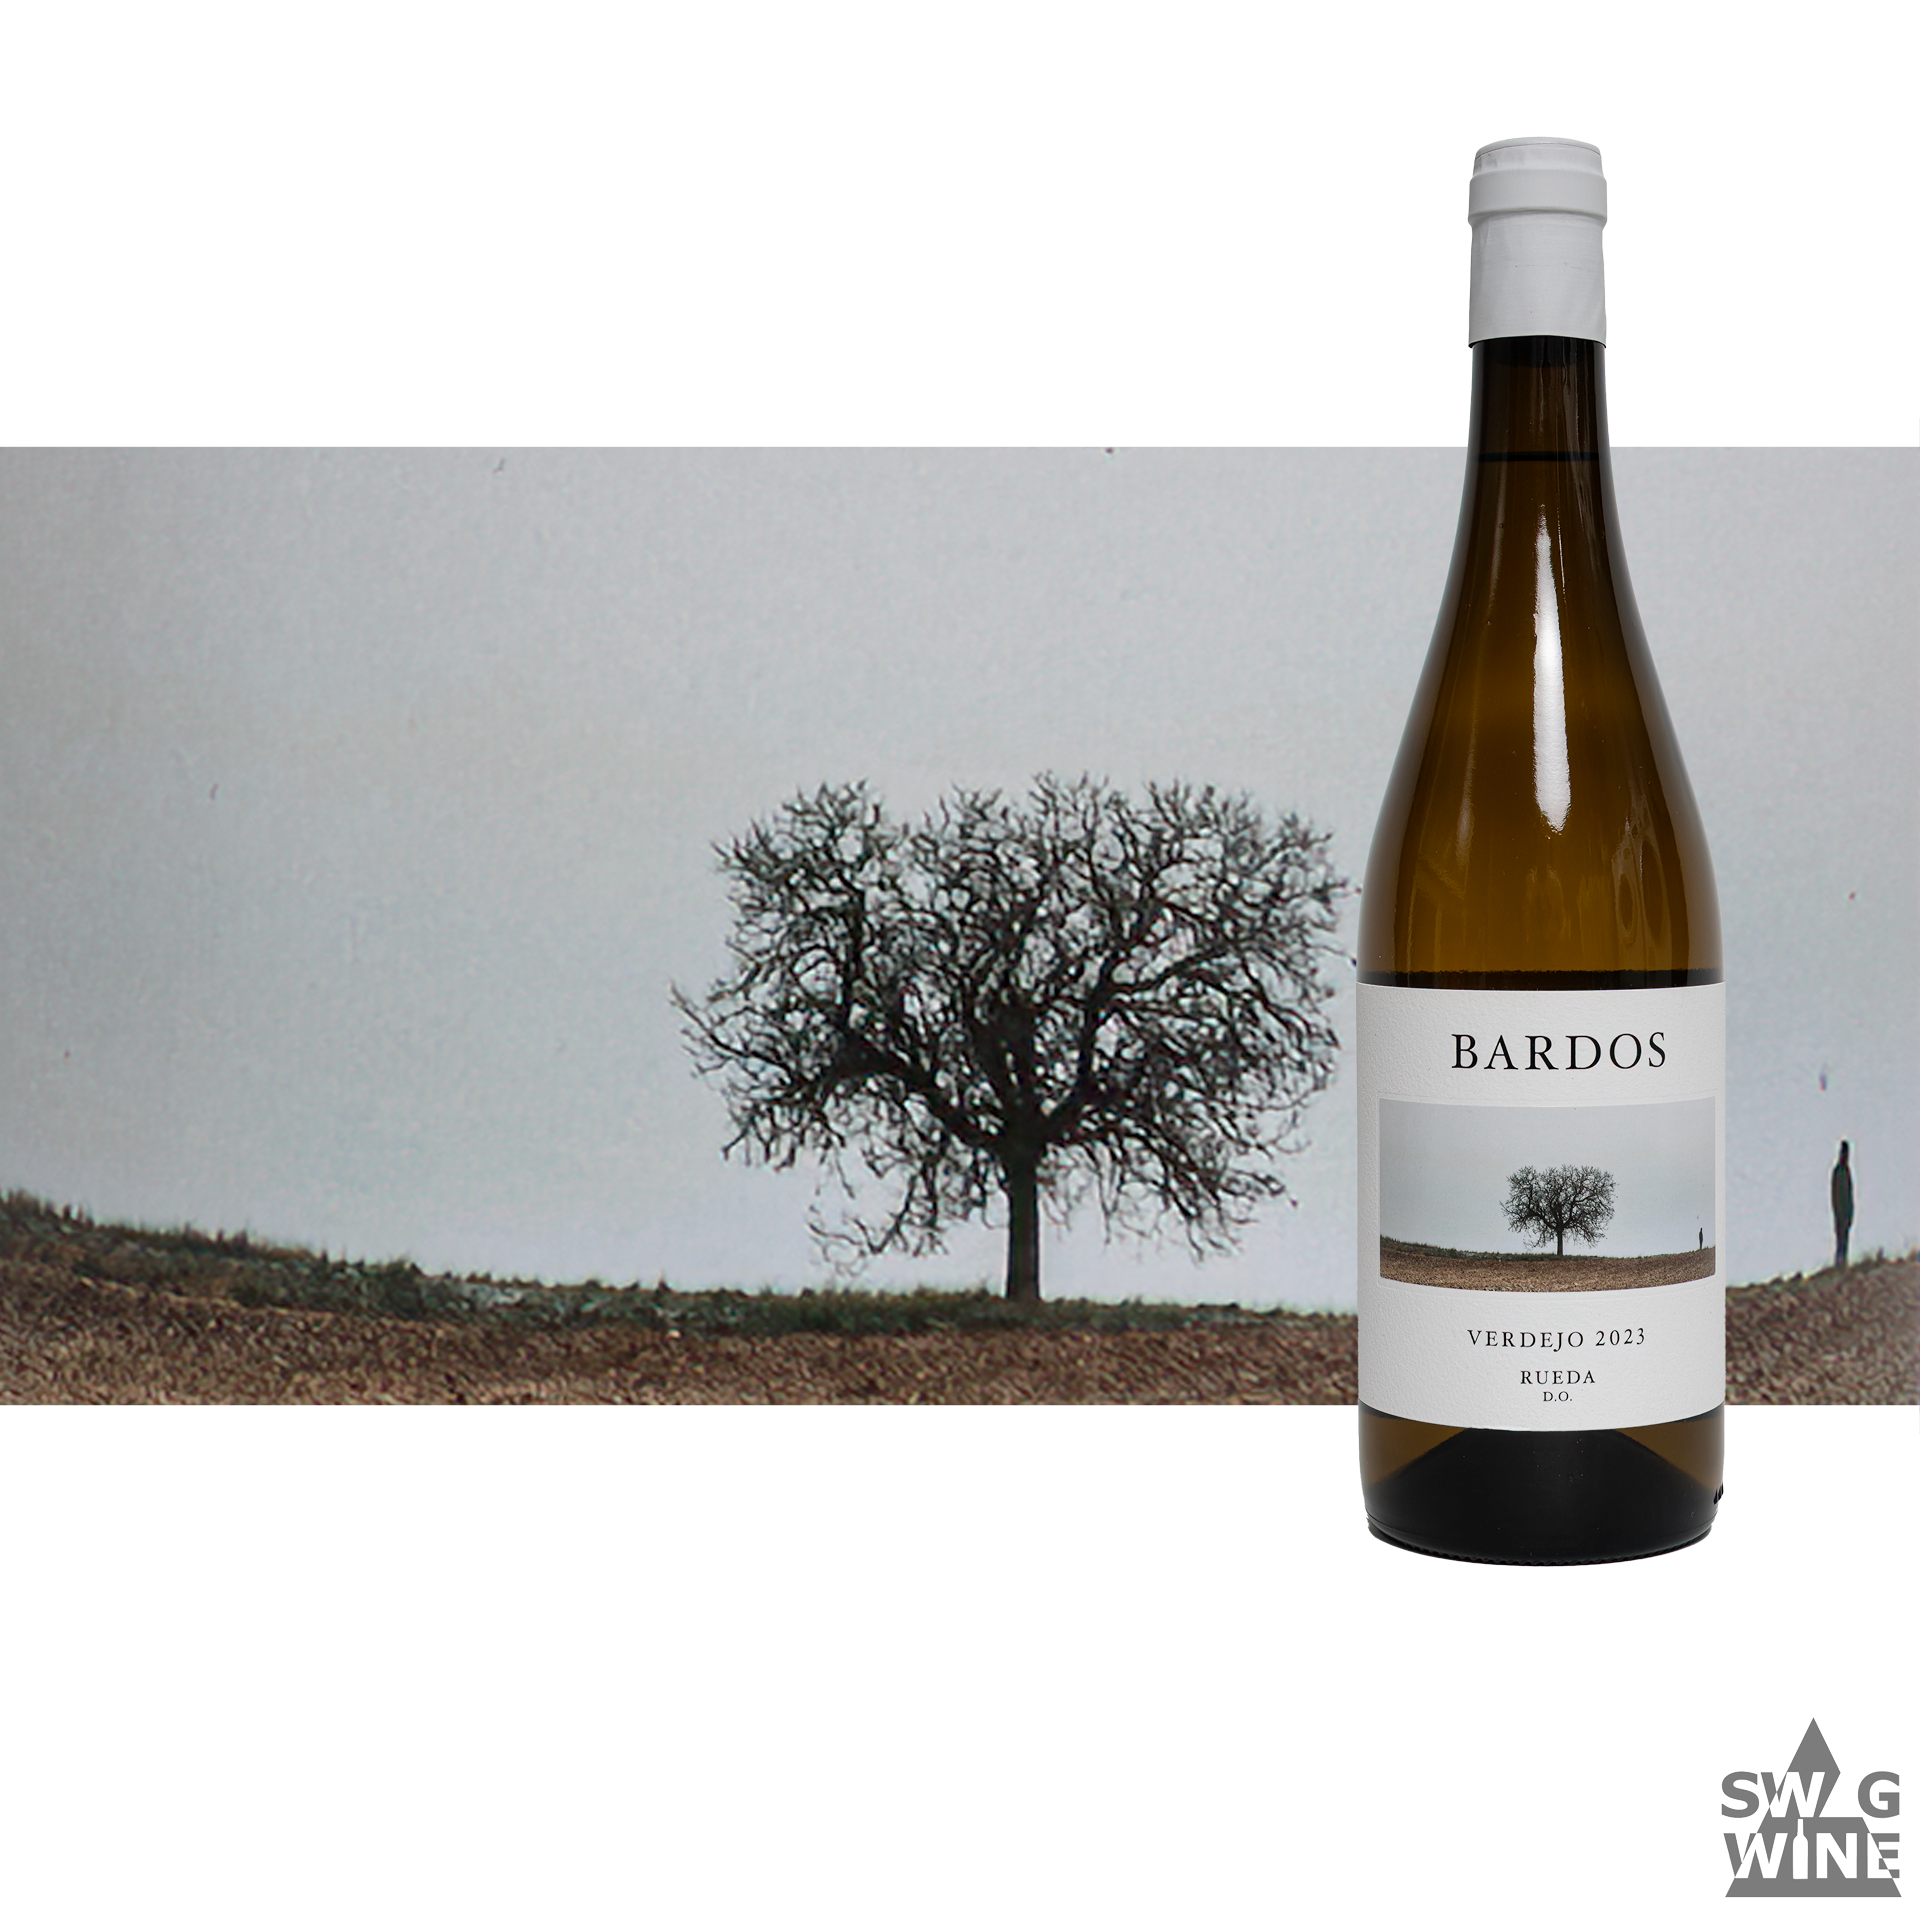 Bardos Verdejo Rueda D.O. spanischer Weißwein Wein mit Foto von Baum